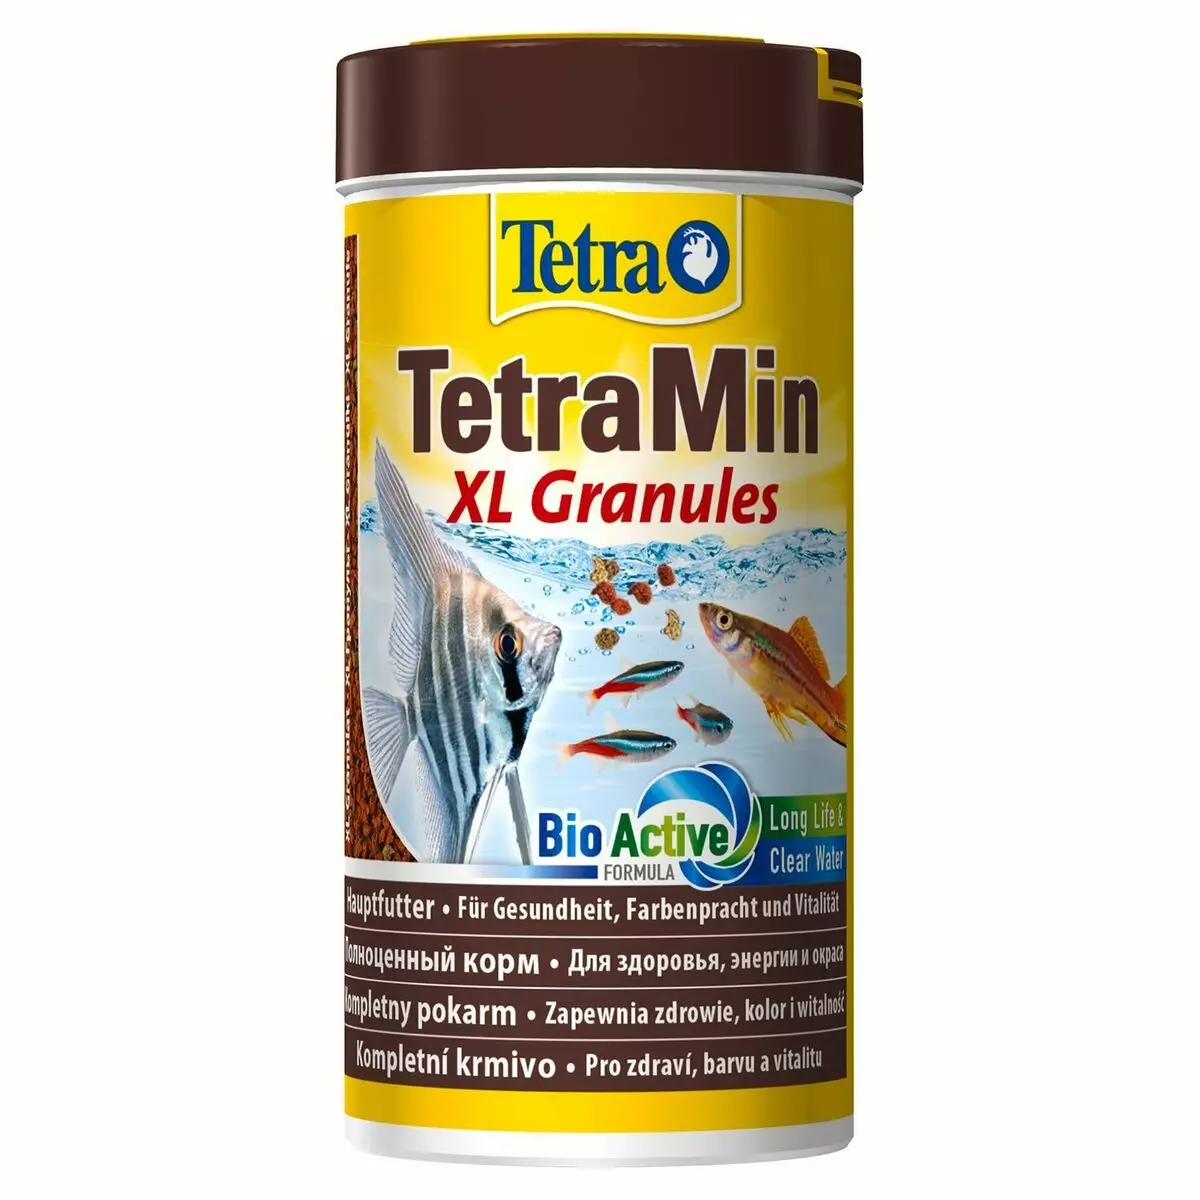 Alimentar Tetra: cíclids de peixos i peix gat, tortuga i el disc de Corydoras cereals i altres espècies de peixos d'aquari Descripció 11333_12